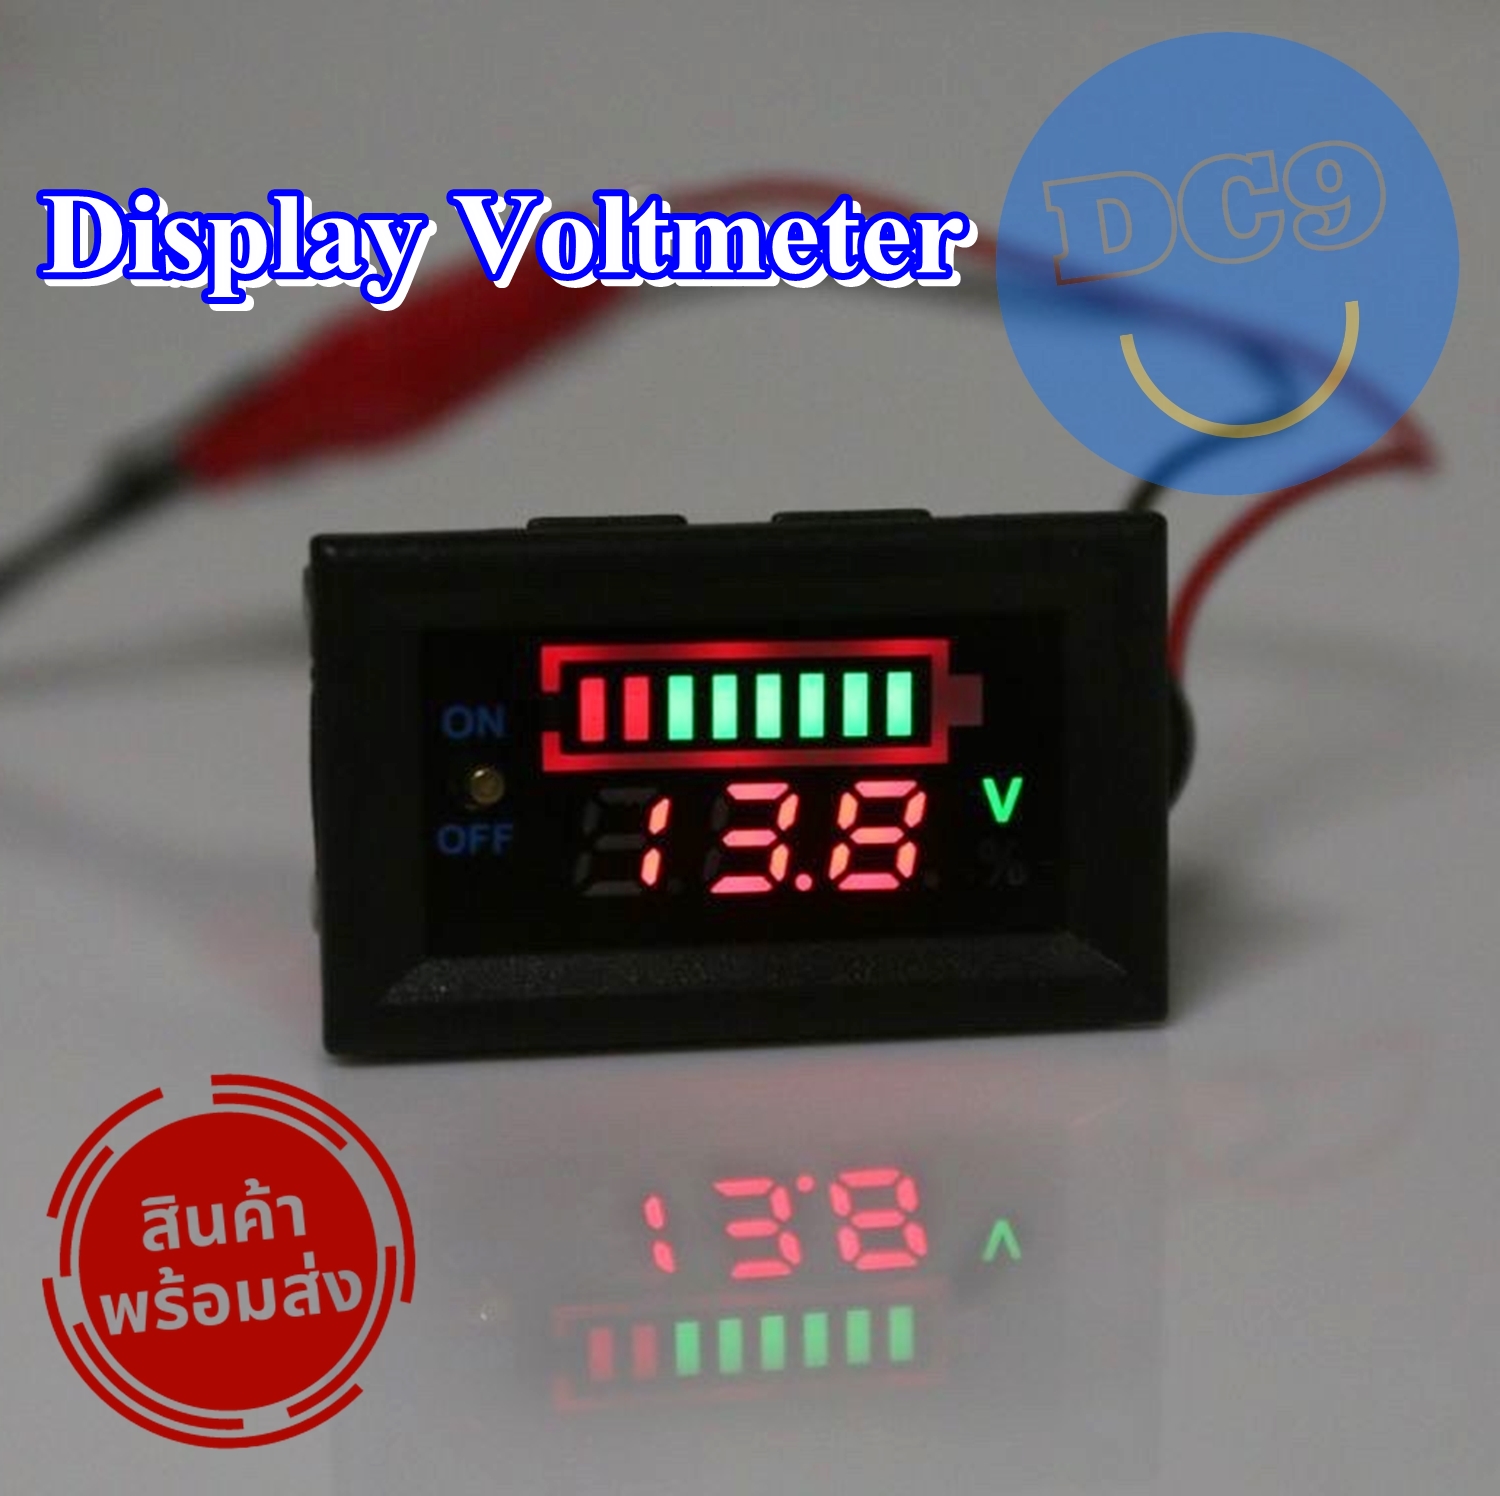 โวลท์มิเตอร์ Volt Meter LED 12 VDC มีปุ่ม ปิด/เปิด 2 สายต่อใช้งานง่าย ใช้กับแบตเตอรี่รถยนต์ แสดงขีดบอกปริมาณ มีสินค้าพร้อมส่ง